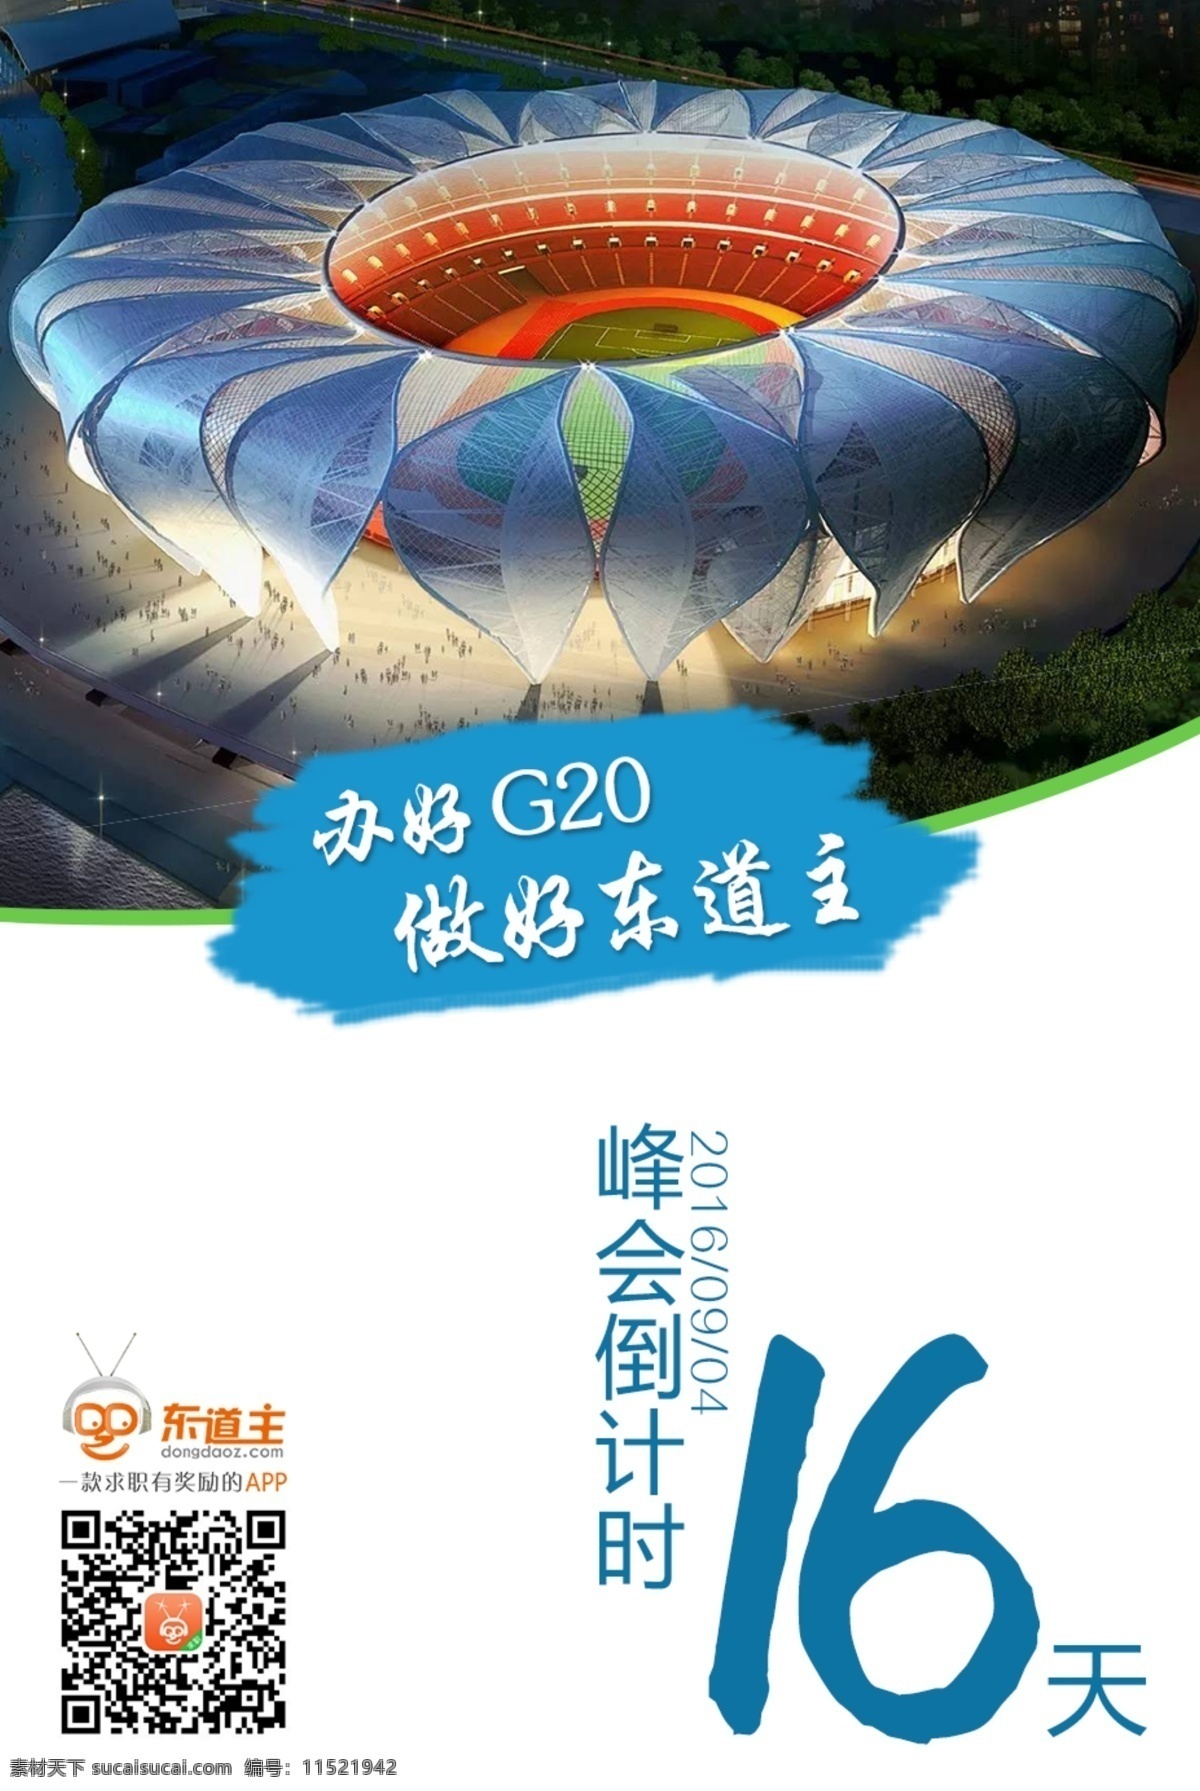 杭州 g20峰会 倒计时 科技 奥体 博览 城 亚运会 东道主 办好g20 做好东道主 当好东道主 海报